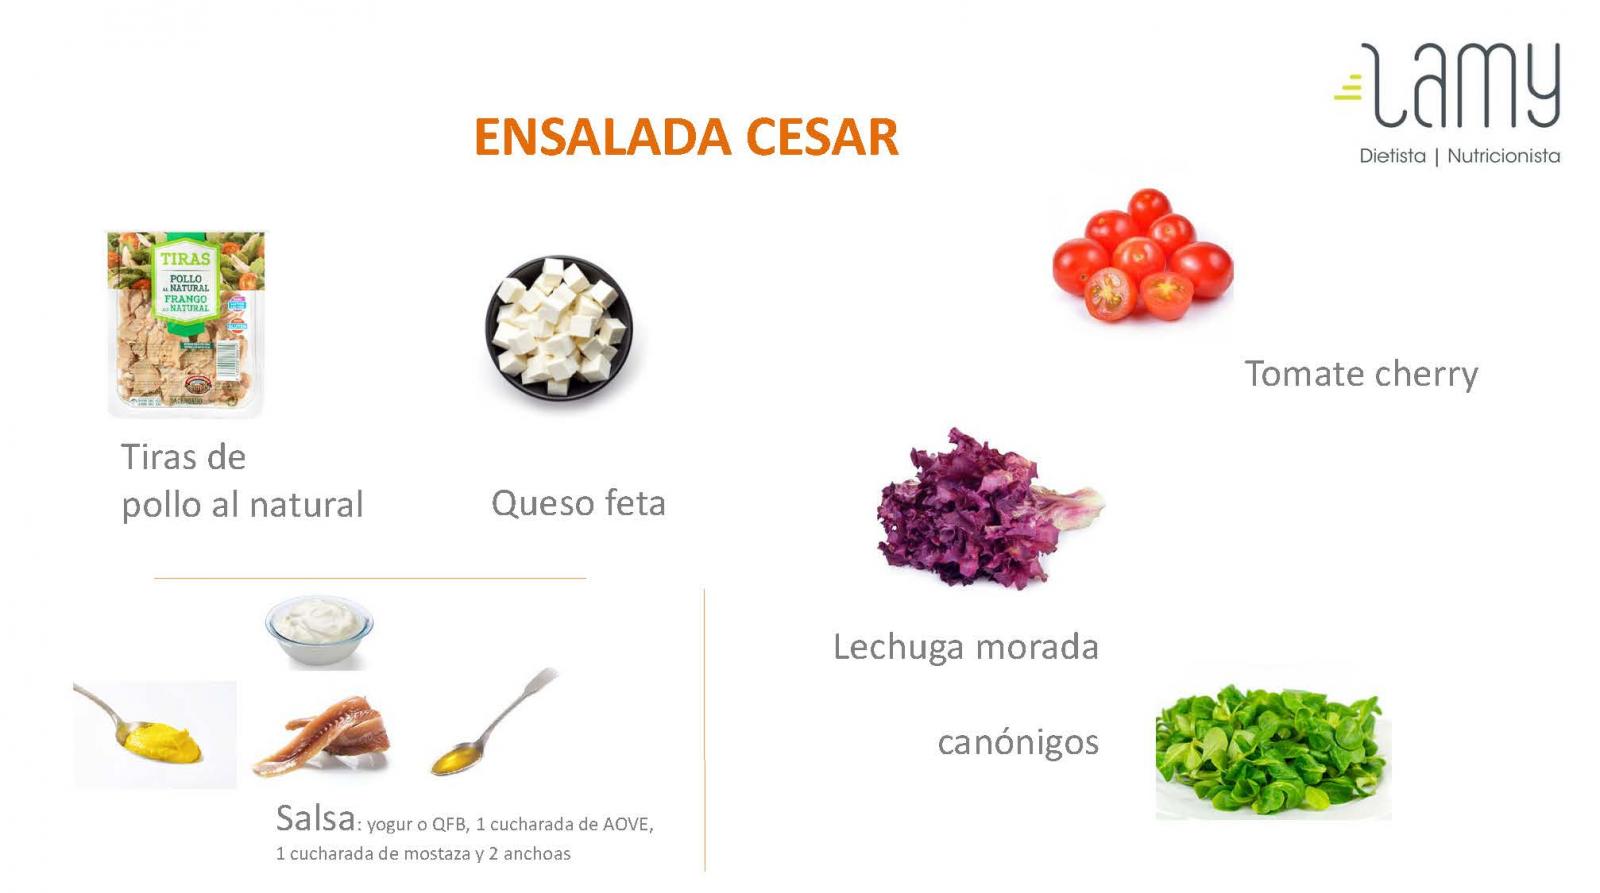 Dietista Nutricionista en Soria: Ensalada César